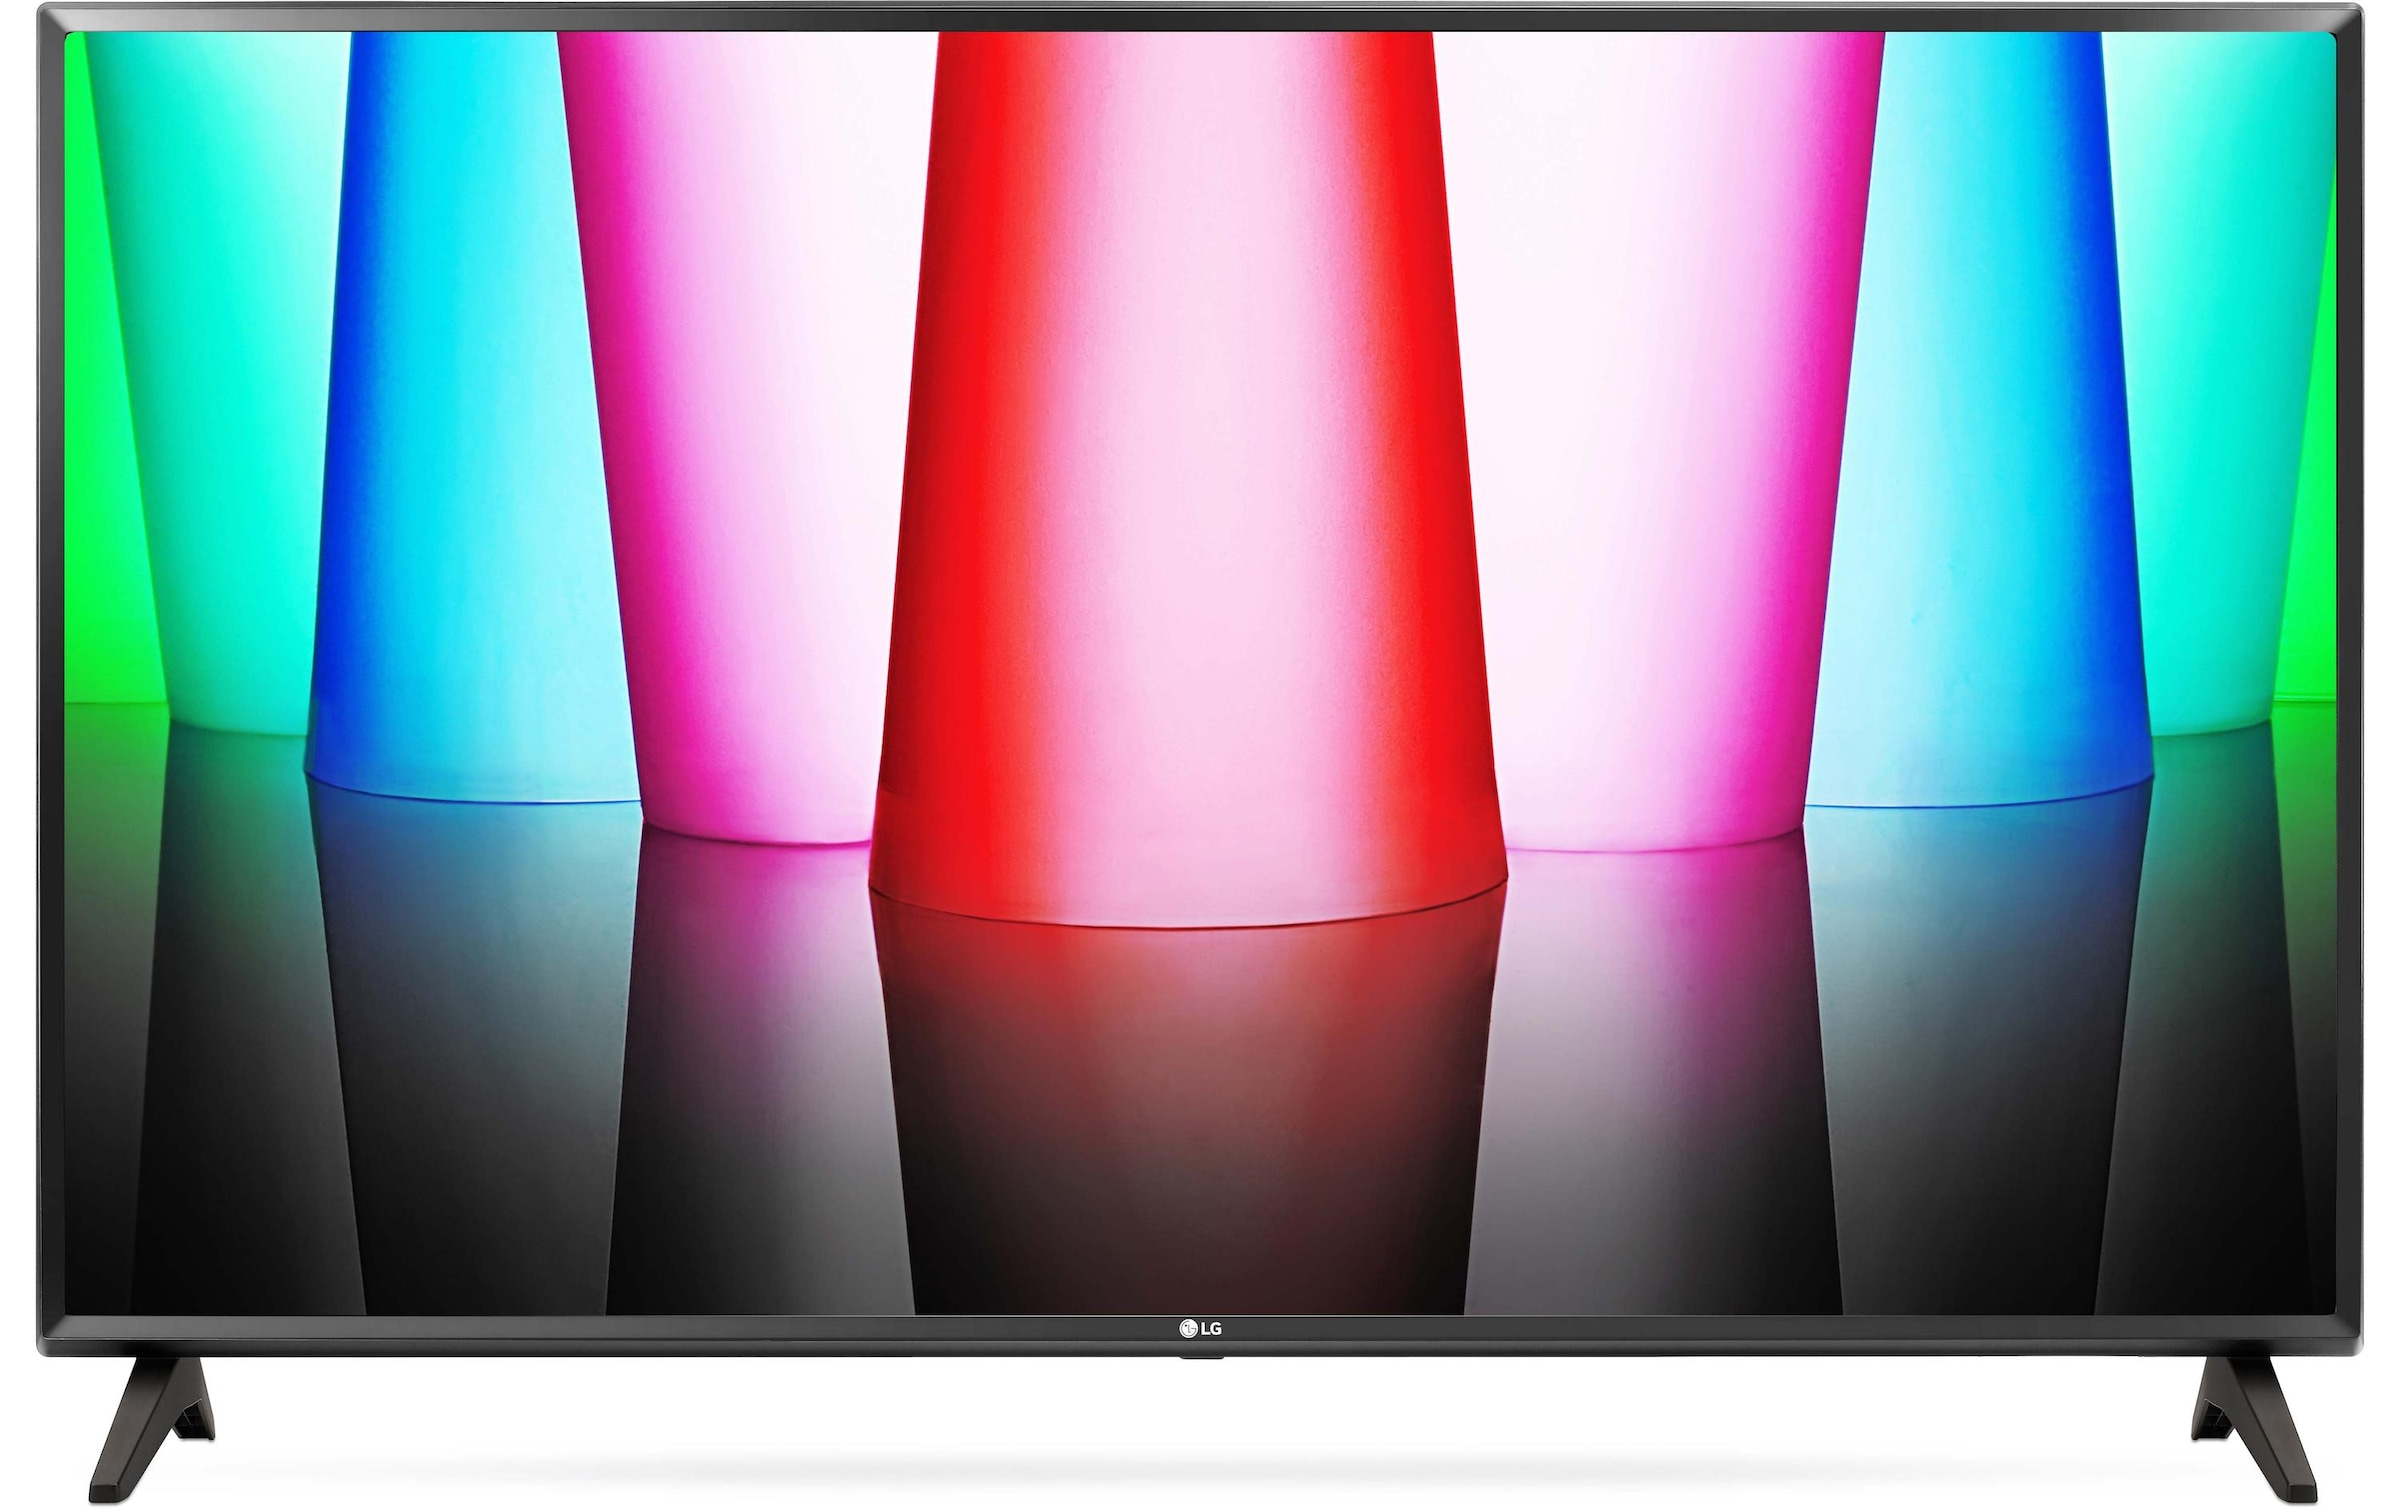 LG LED-Fernseher »32LQ570B6«, 81 cm/32 Zoll, WXGA